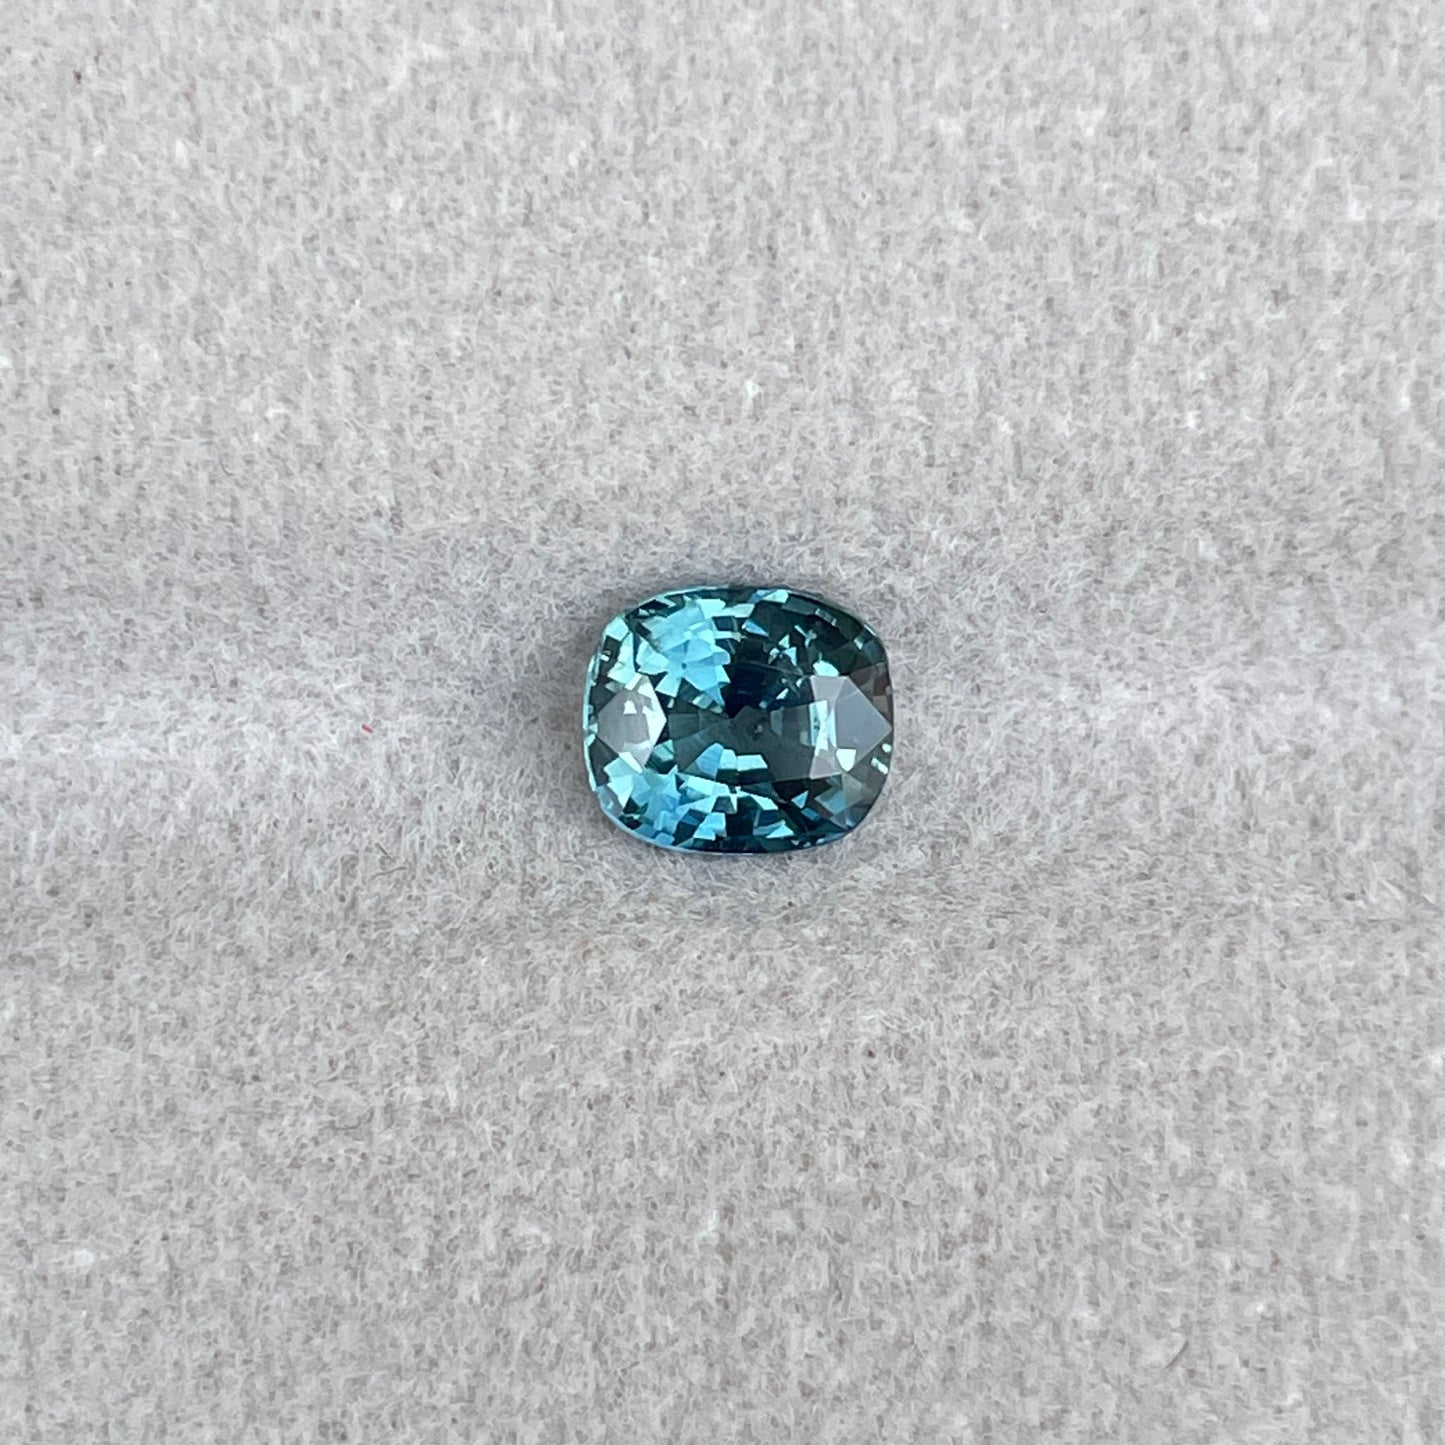 1.05 carat cushion teal sapphire